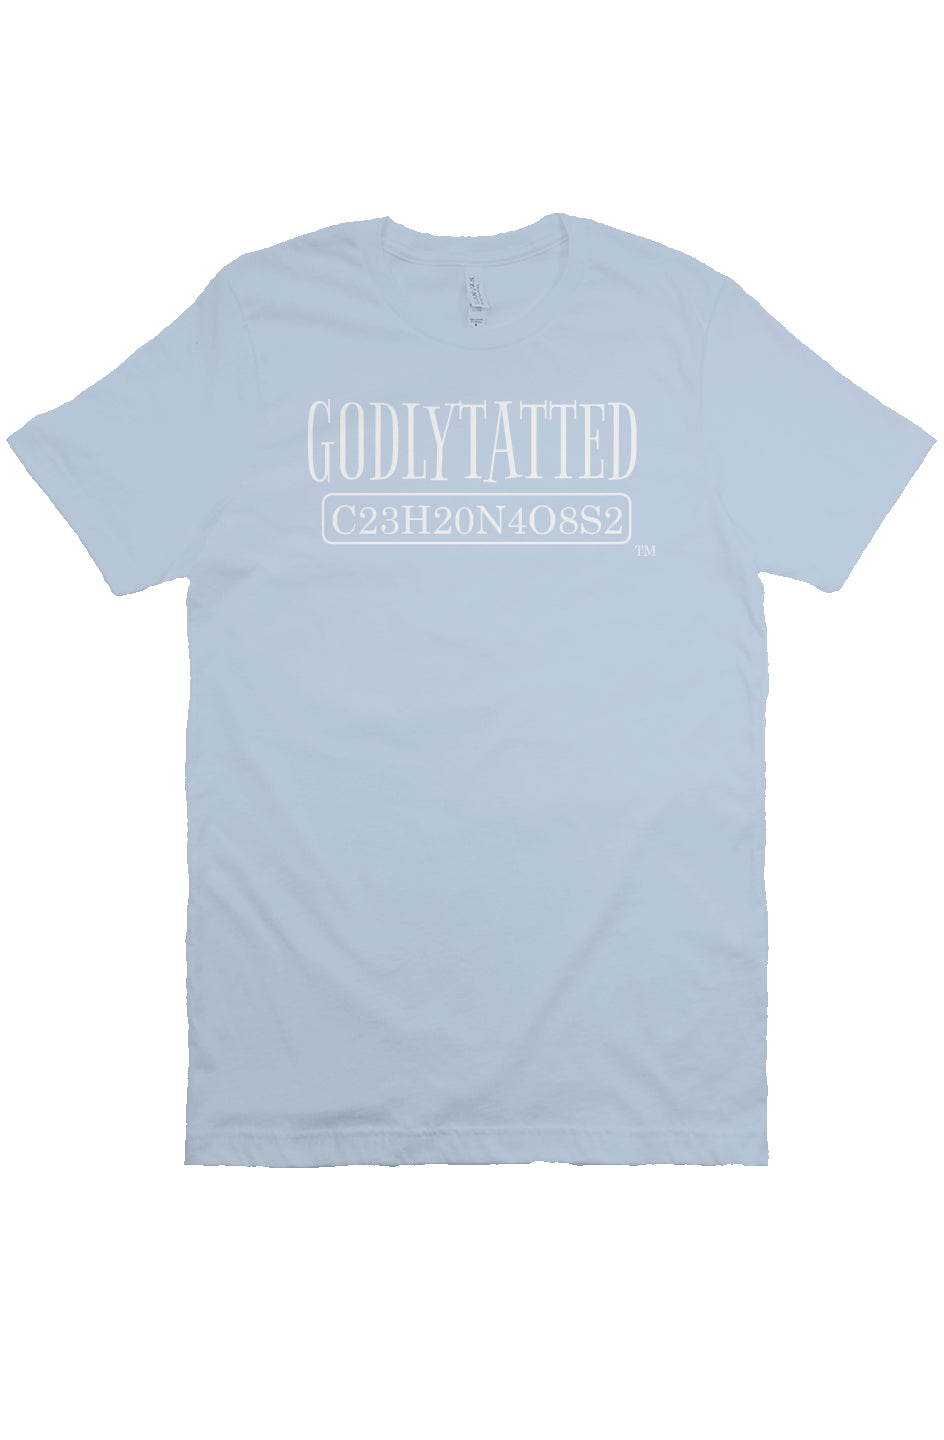 Godlytatted - Adult - Light Blue - White Logo